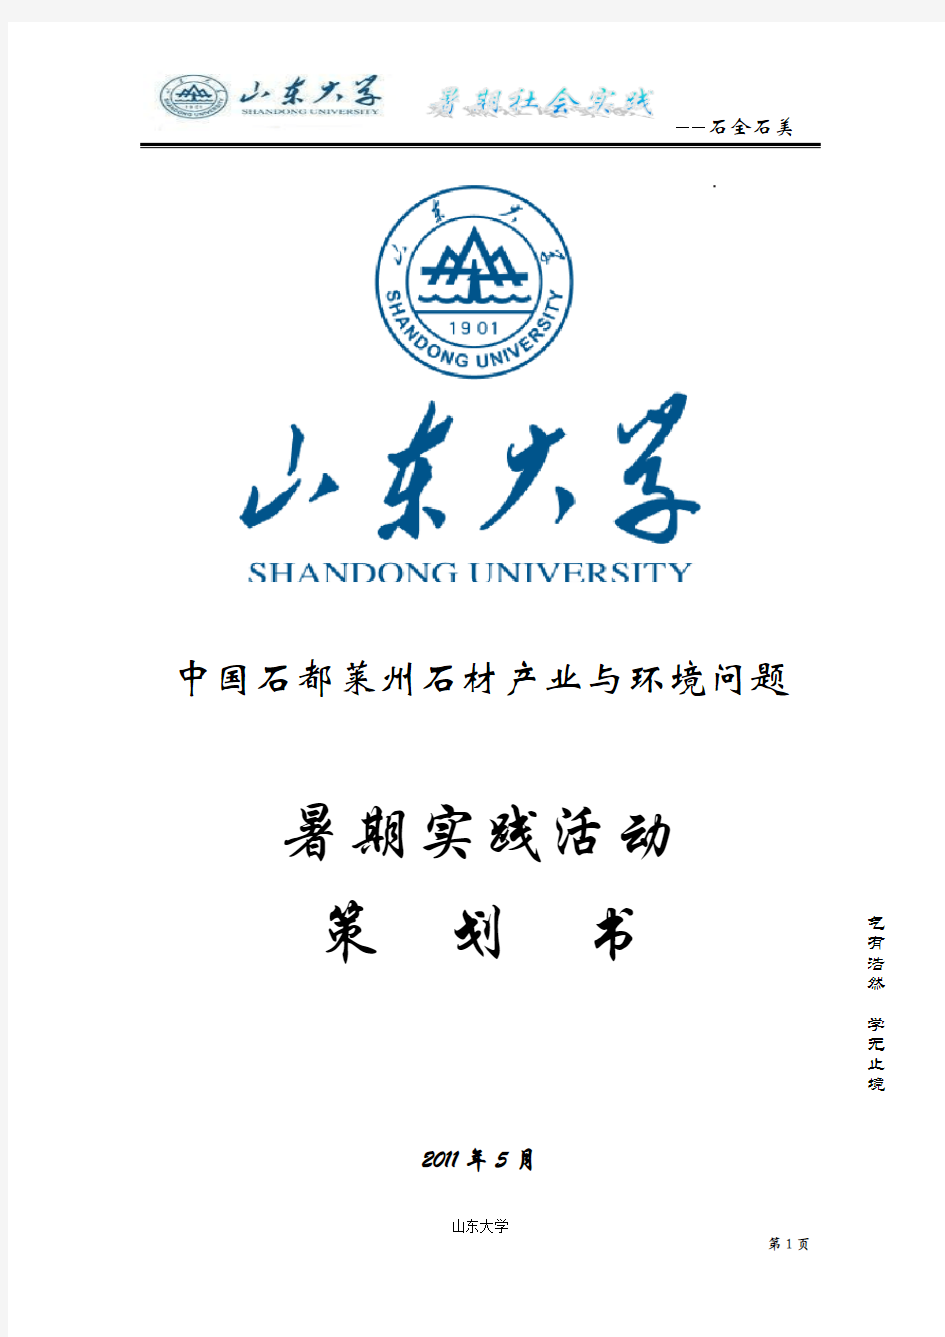 中国石都莱州石材产业与环境问题暑期社会实践策划书